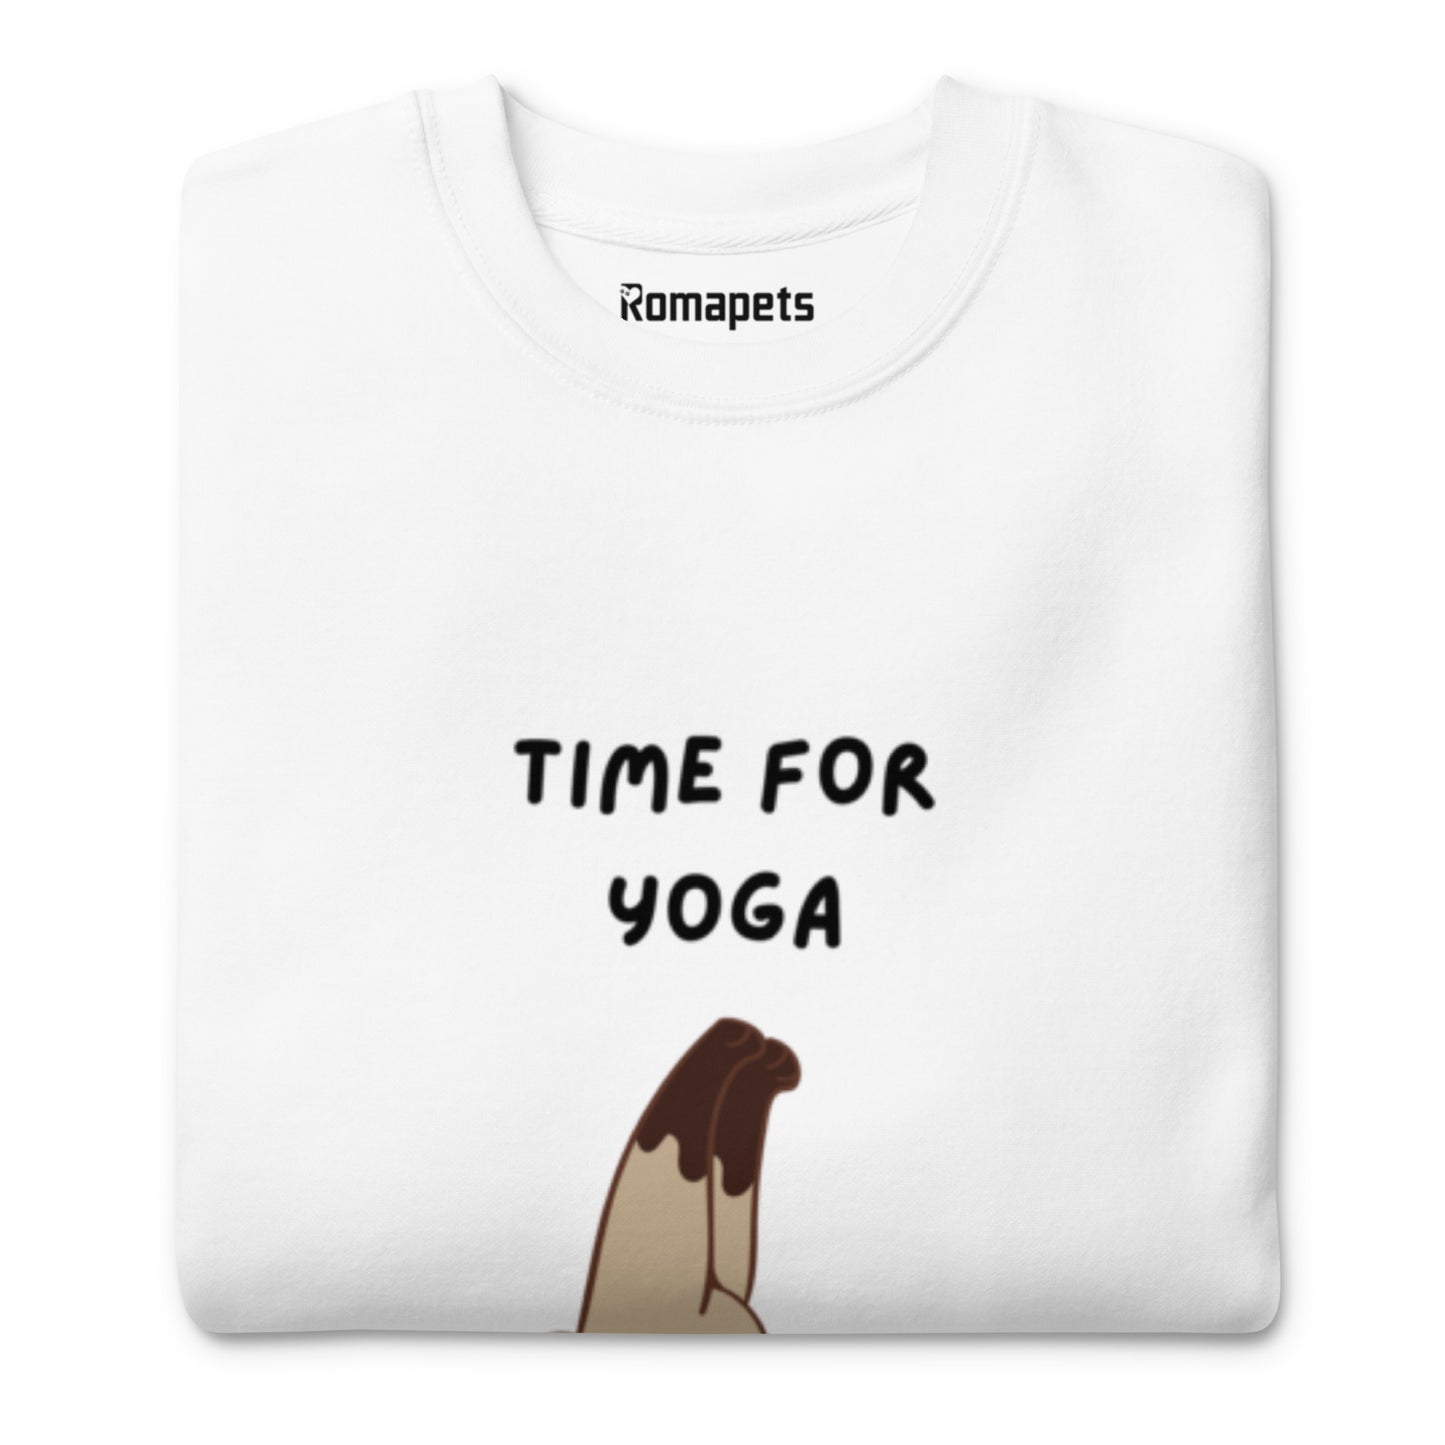 Time for Yoga - Sweatshirt